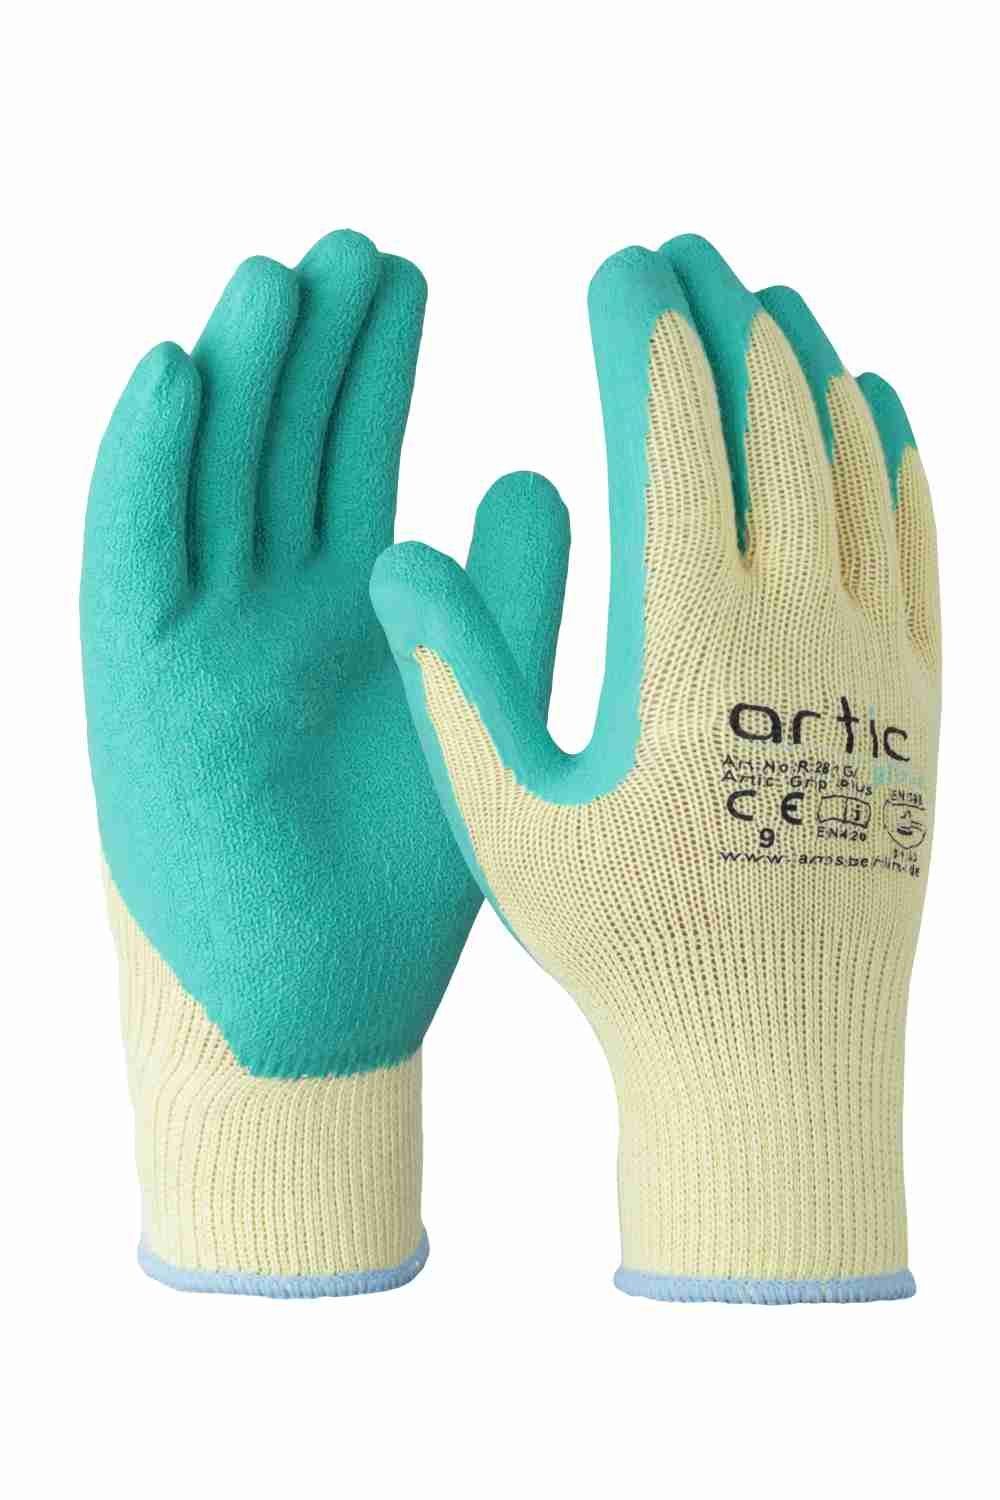 ALLEGRA Arbeitshandschuh-Set Handschuhe Artic Glove Grip Plus Größe 10